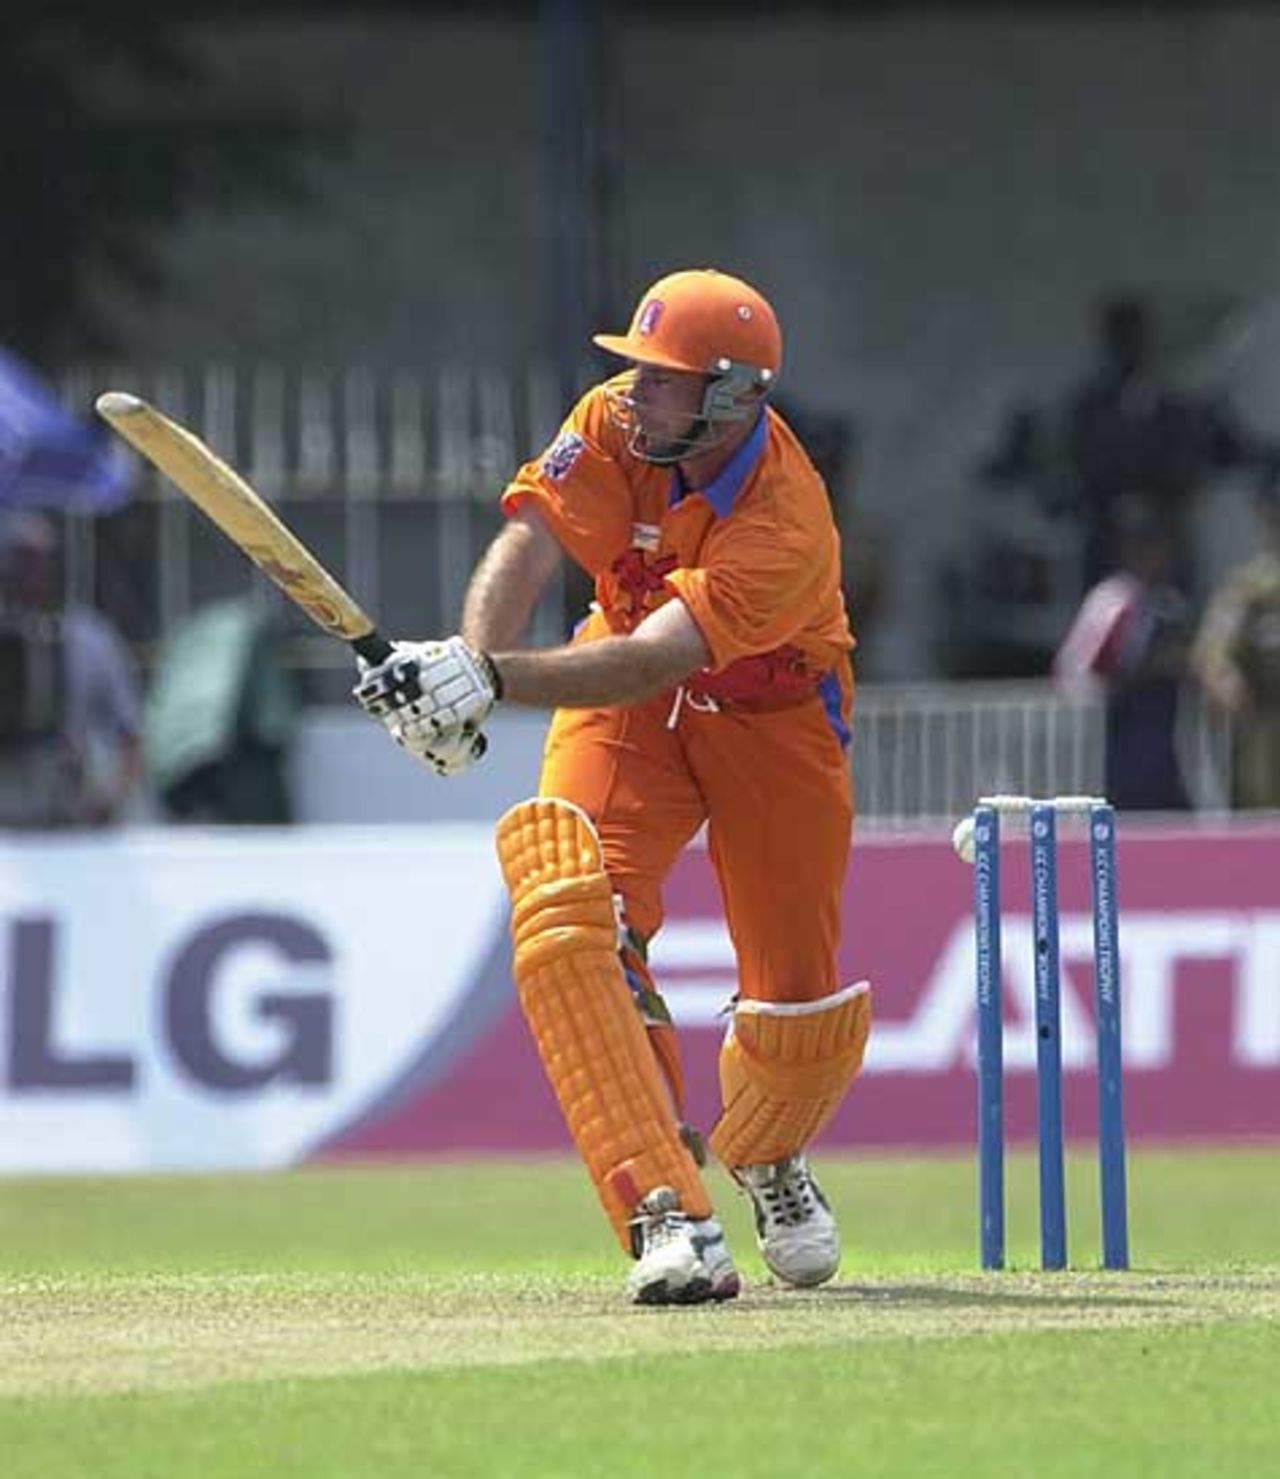 ICC Champions Trophy, Netherlands v Pakistan, 21st September 2002, Colombo (SSC)